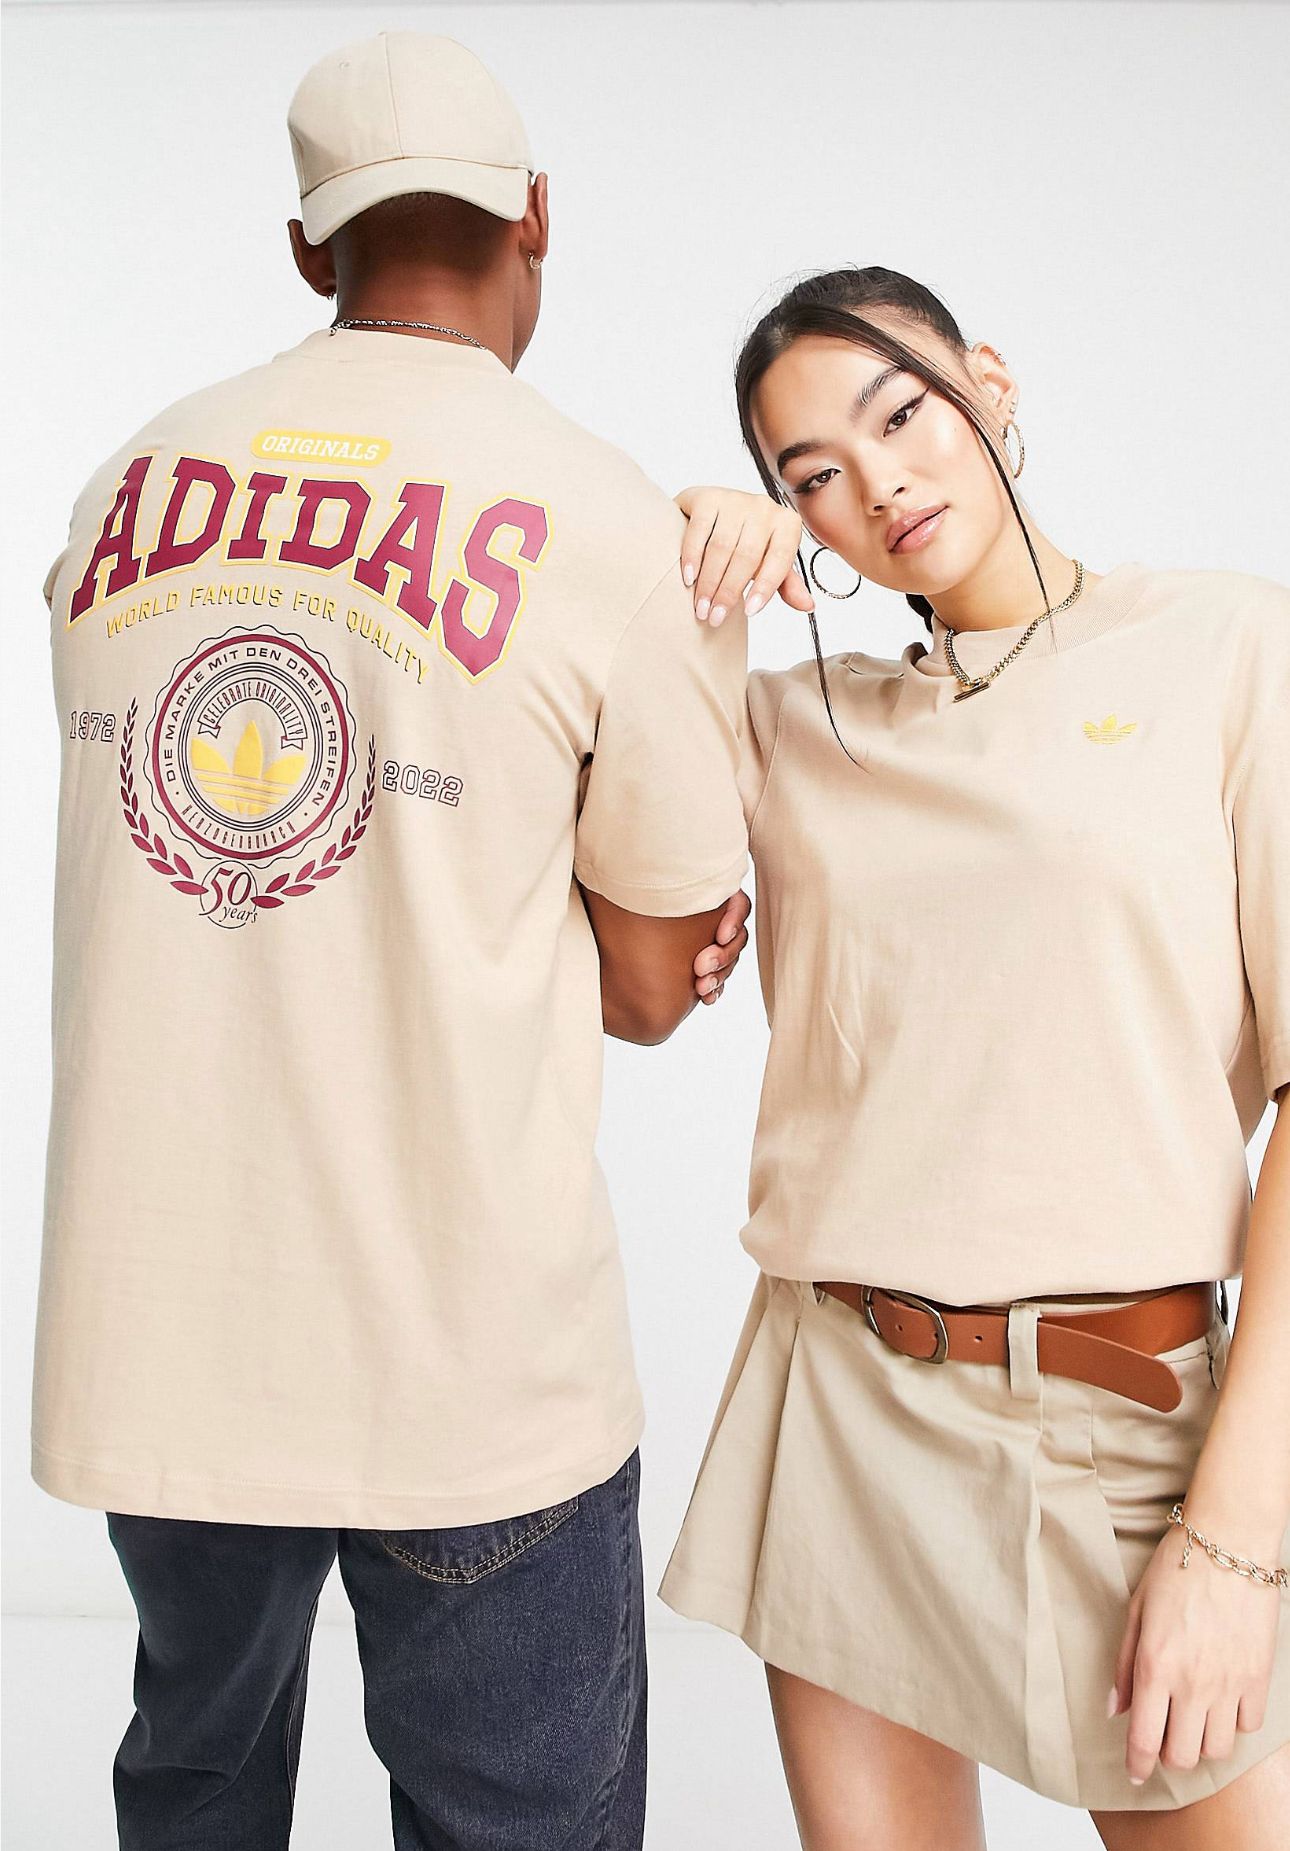 T-shirt Adidas original crema con letras ADIDAS en rojo vino y logotipo de la marca en amarillo.